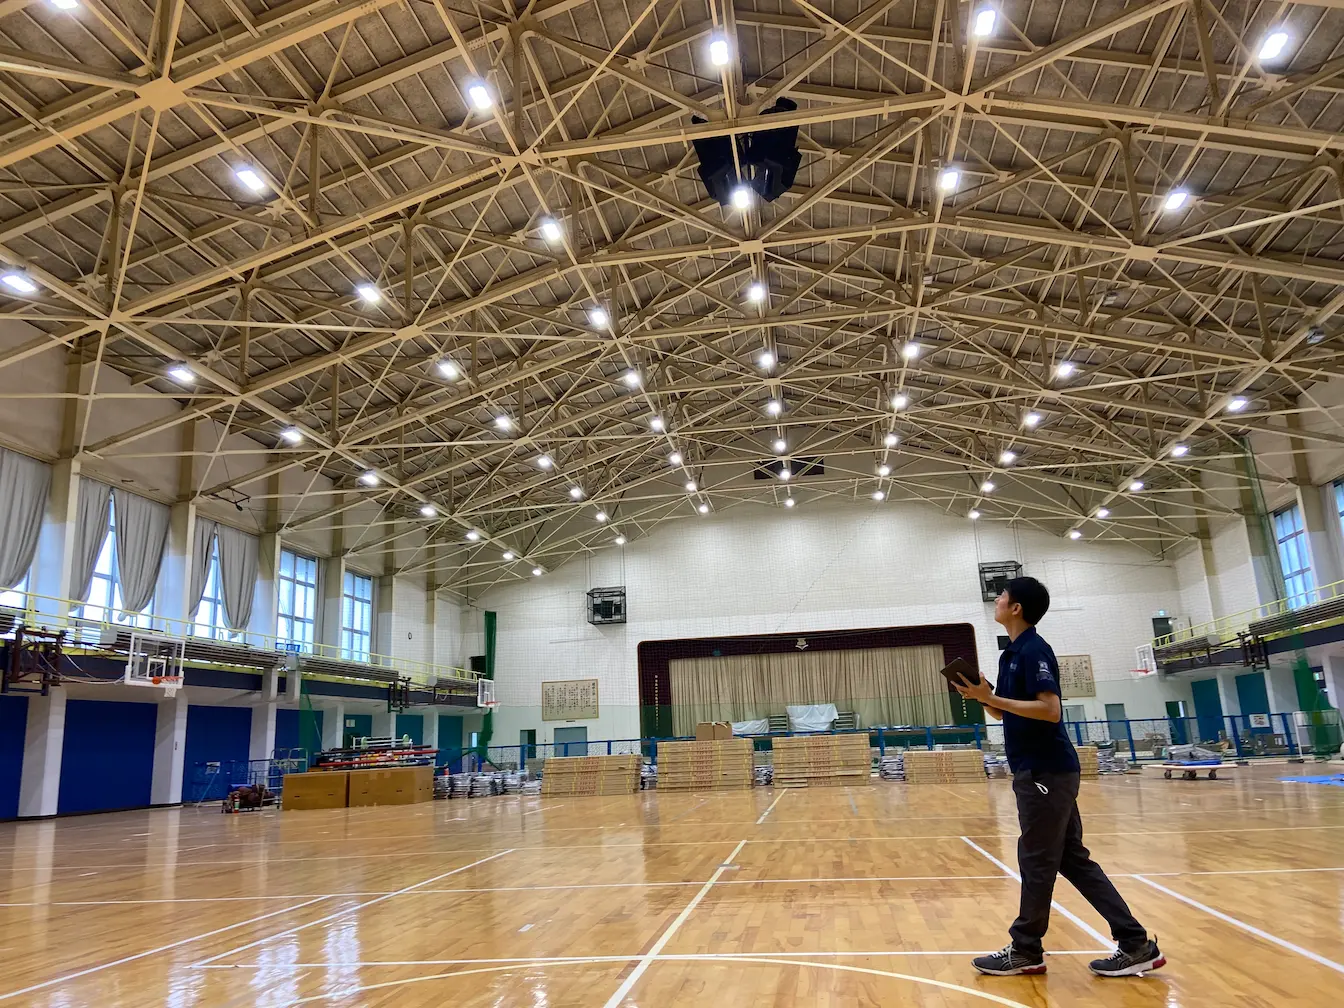 札幌市内 - 某私立高校様体育館 ｜ iPadで照明操作 (導入事例)